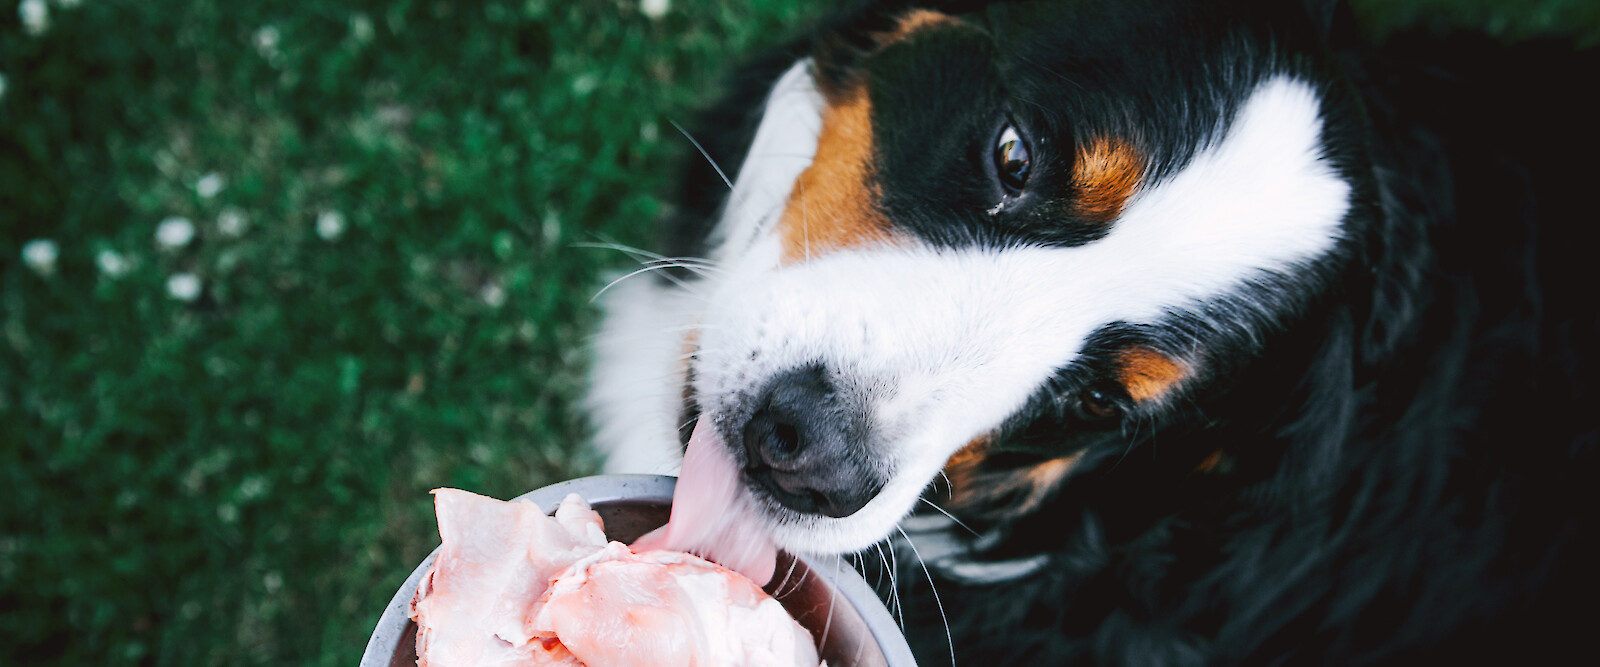 Lediglich Knochen und rohe Kost – Barfen ist ein Trend der Hundefütterung, aber ist diese Form der Ernährung auch gut für den Hund geeignet? (© Evelina – stock.adobe.com).